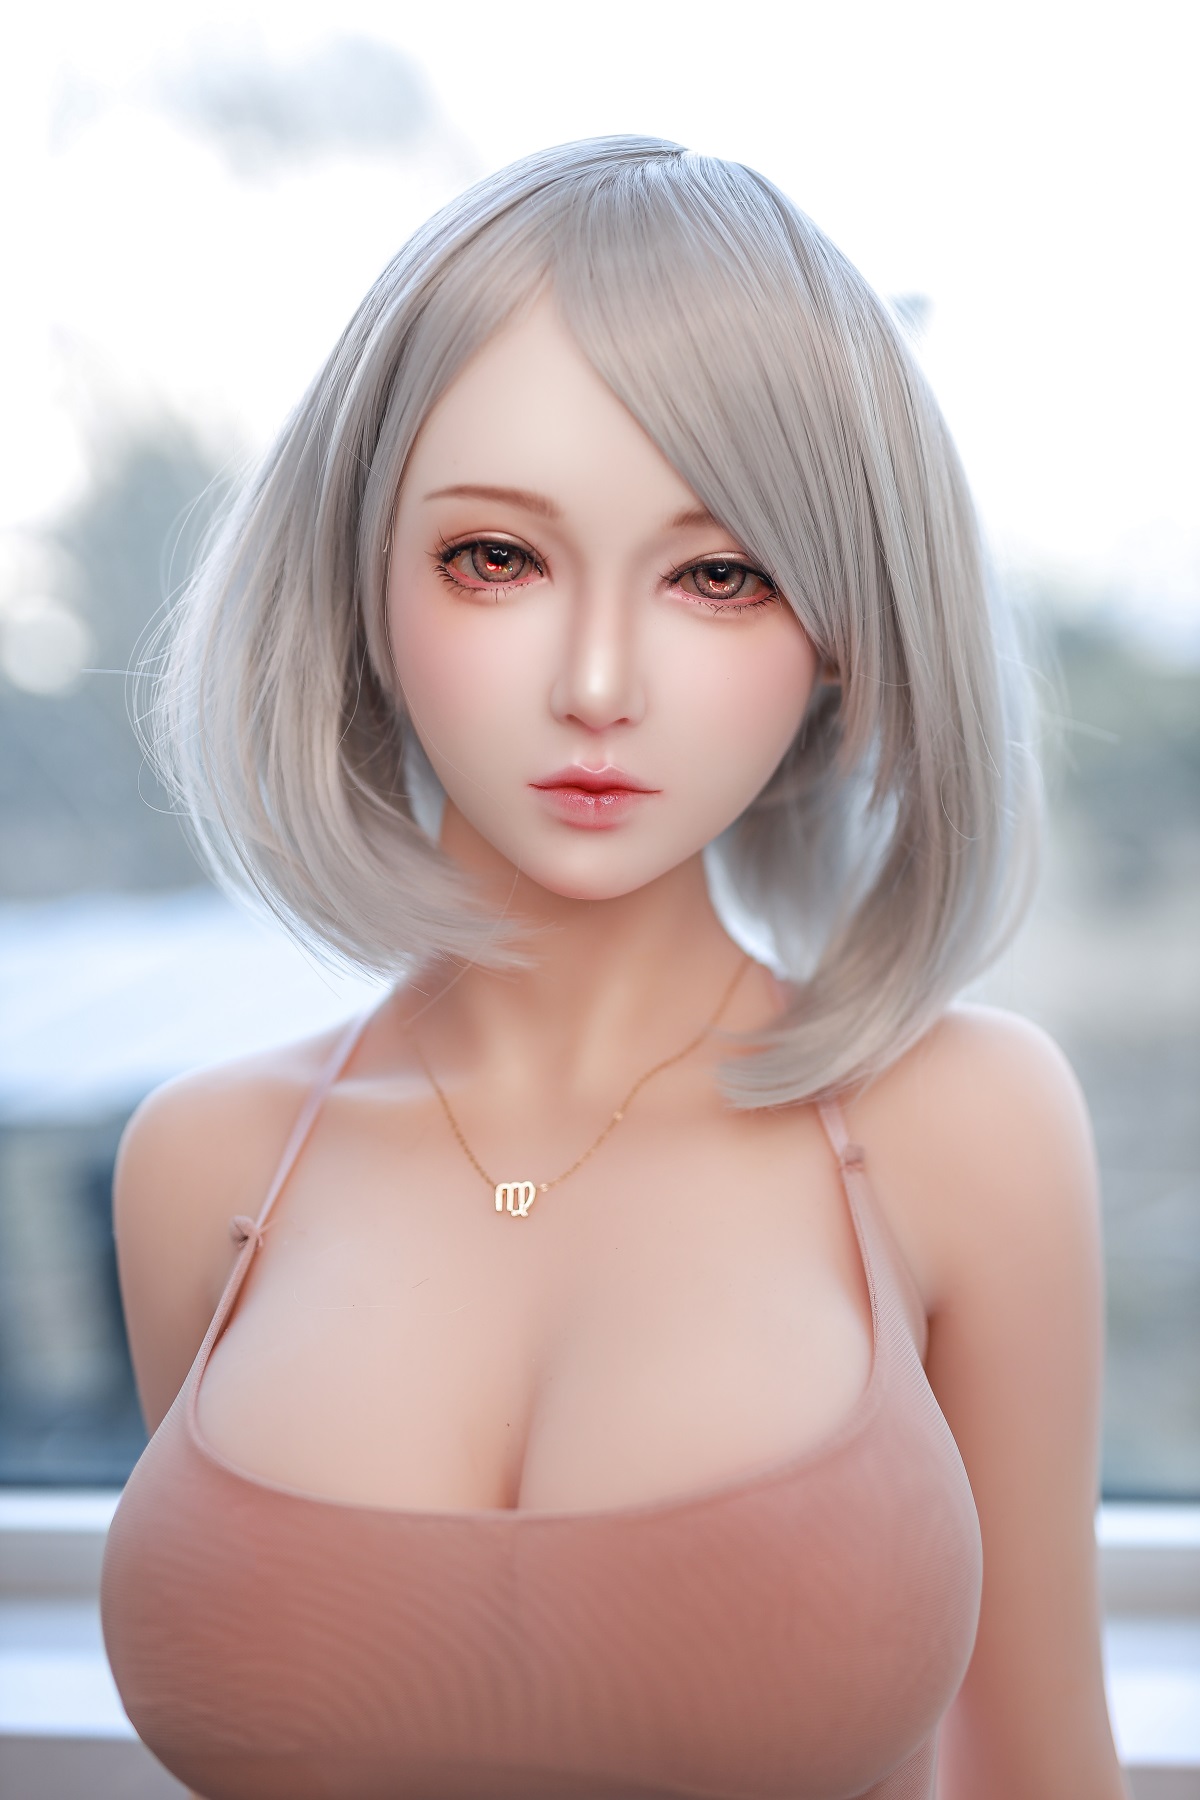 Dimu Doll 5ft 5 / 166cm Short Hear Sex Doll with Silicone Head -  Yumii -SexDollBabe